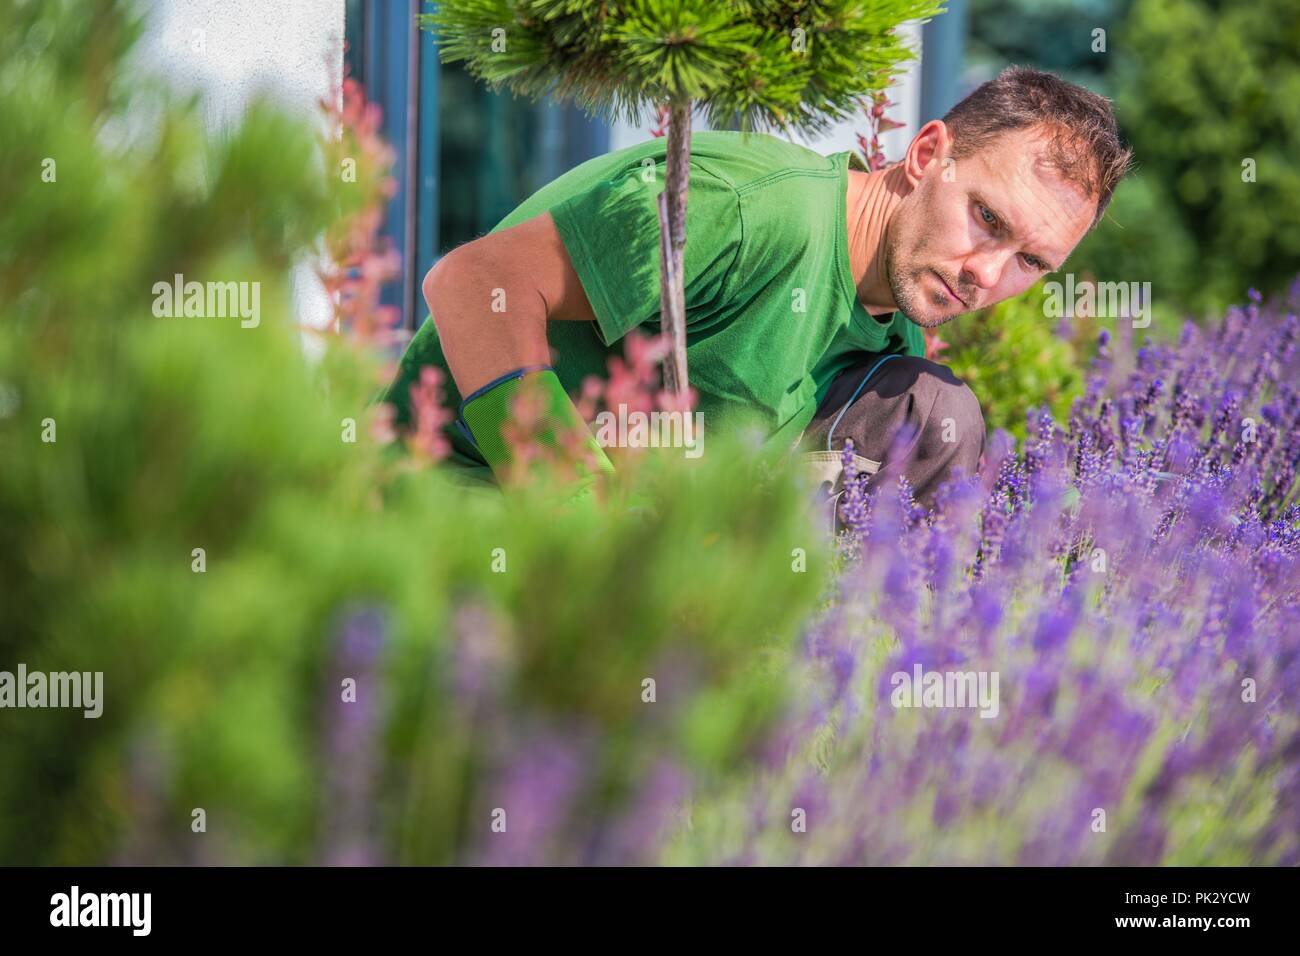 Young Caucasian Gardener in His 30s in the Backyard Garden. Stock Photo